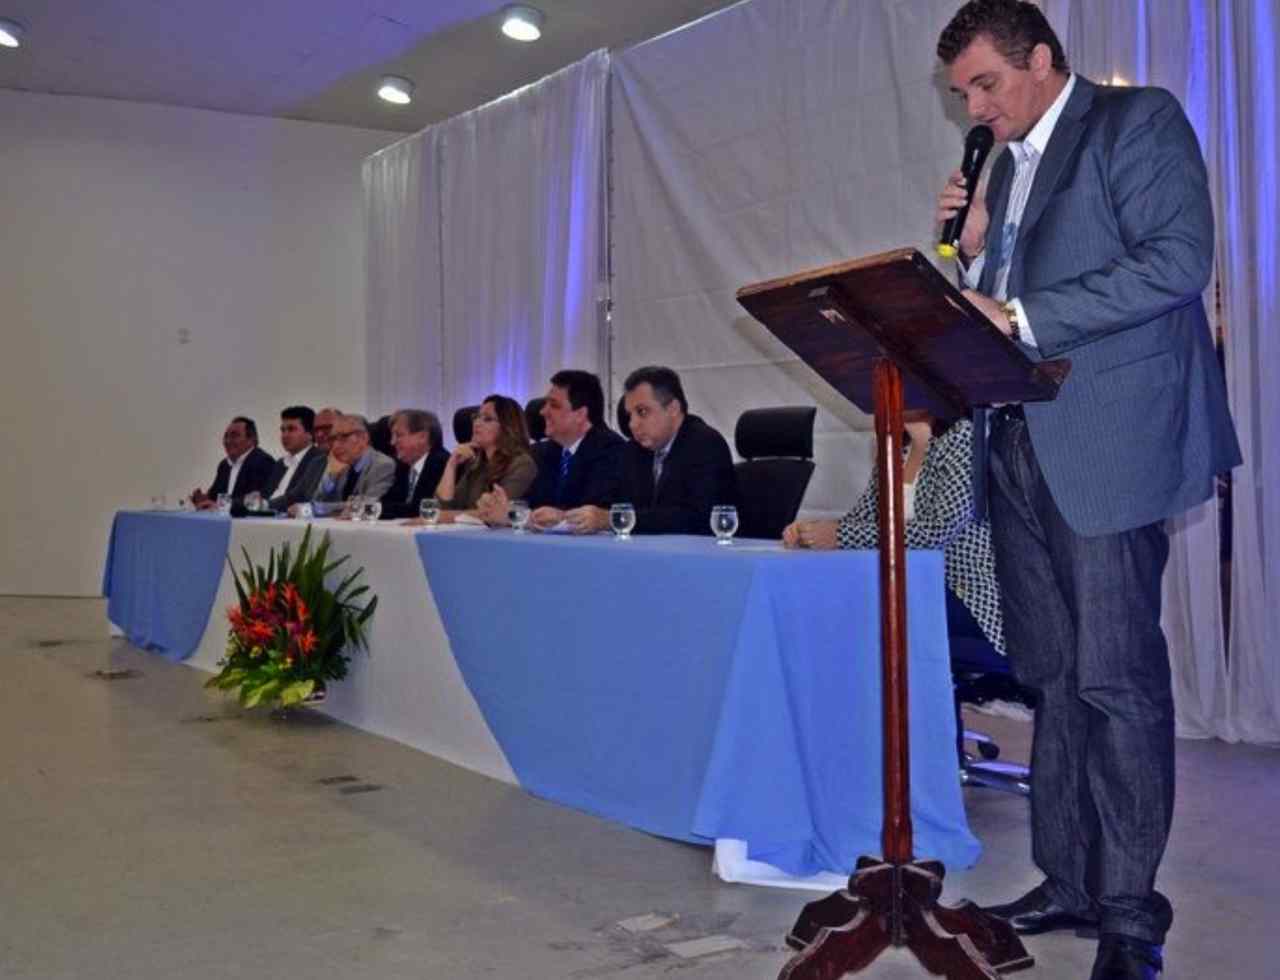 FORTICS: Parnaíba sedia a primeira edição do Fórum de Tecnologia, Inovação e Ciência do Estado do Piauí